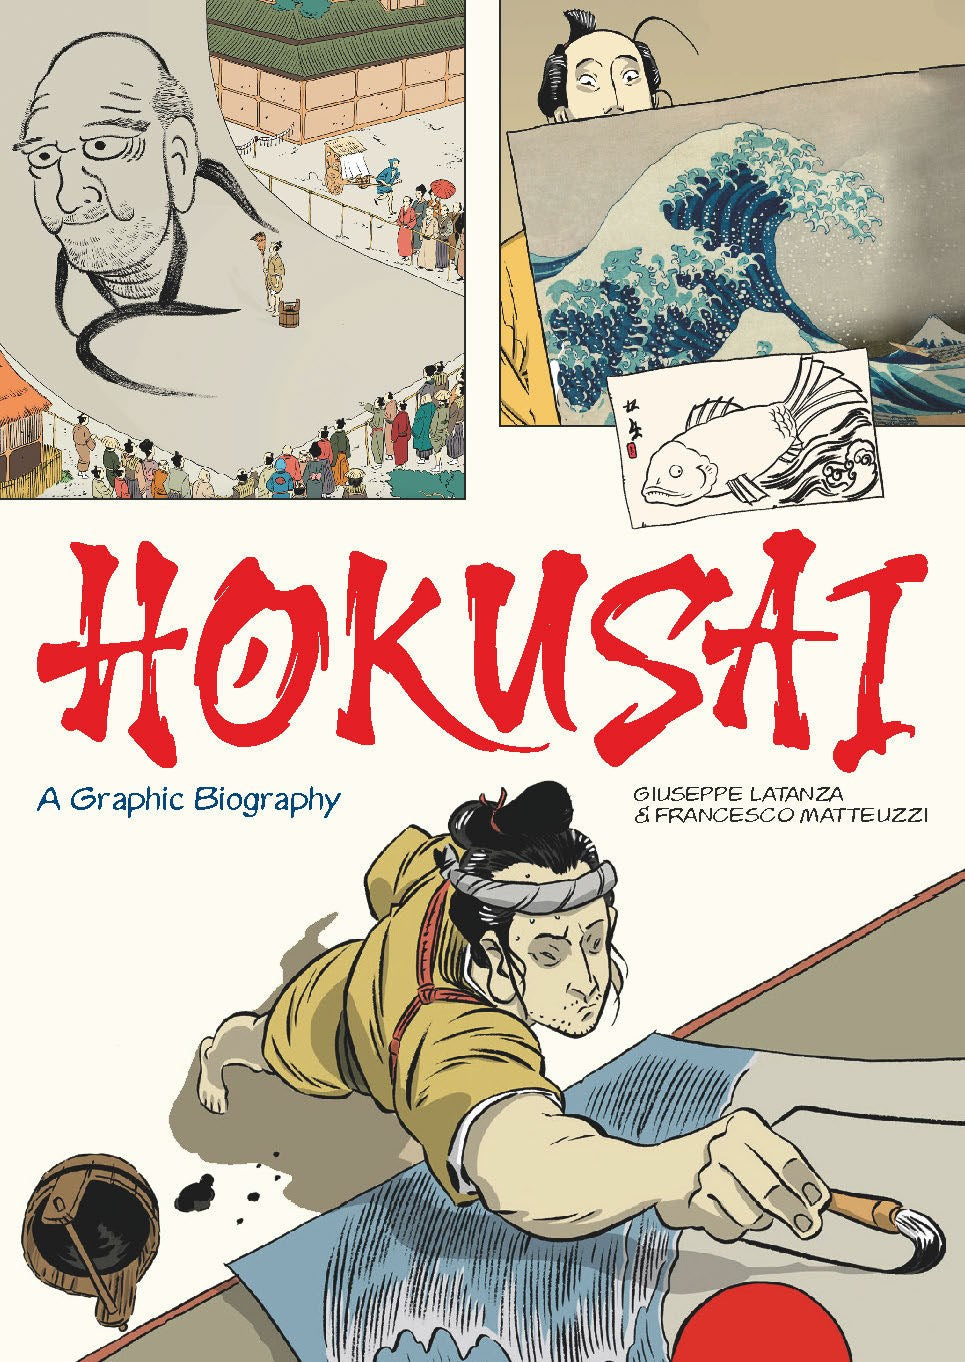 Hokusai: A Graphic Biography